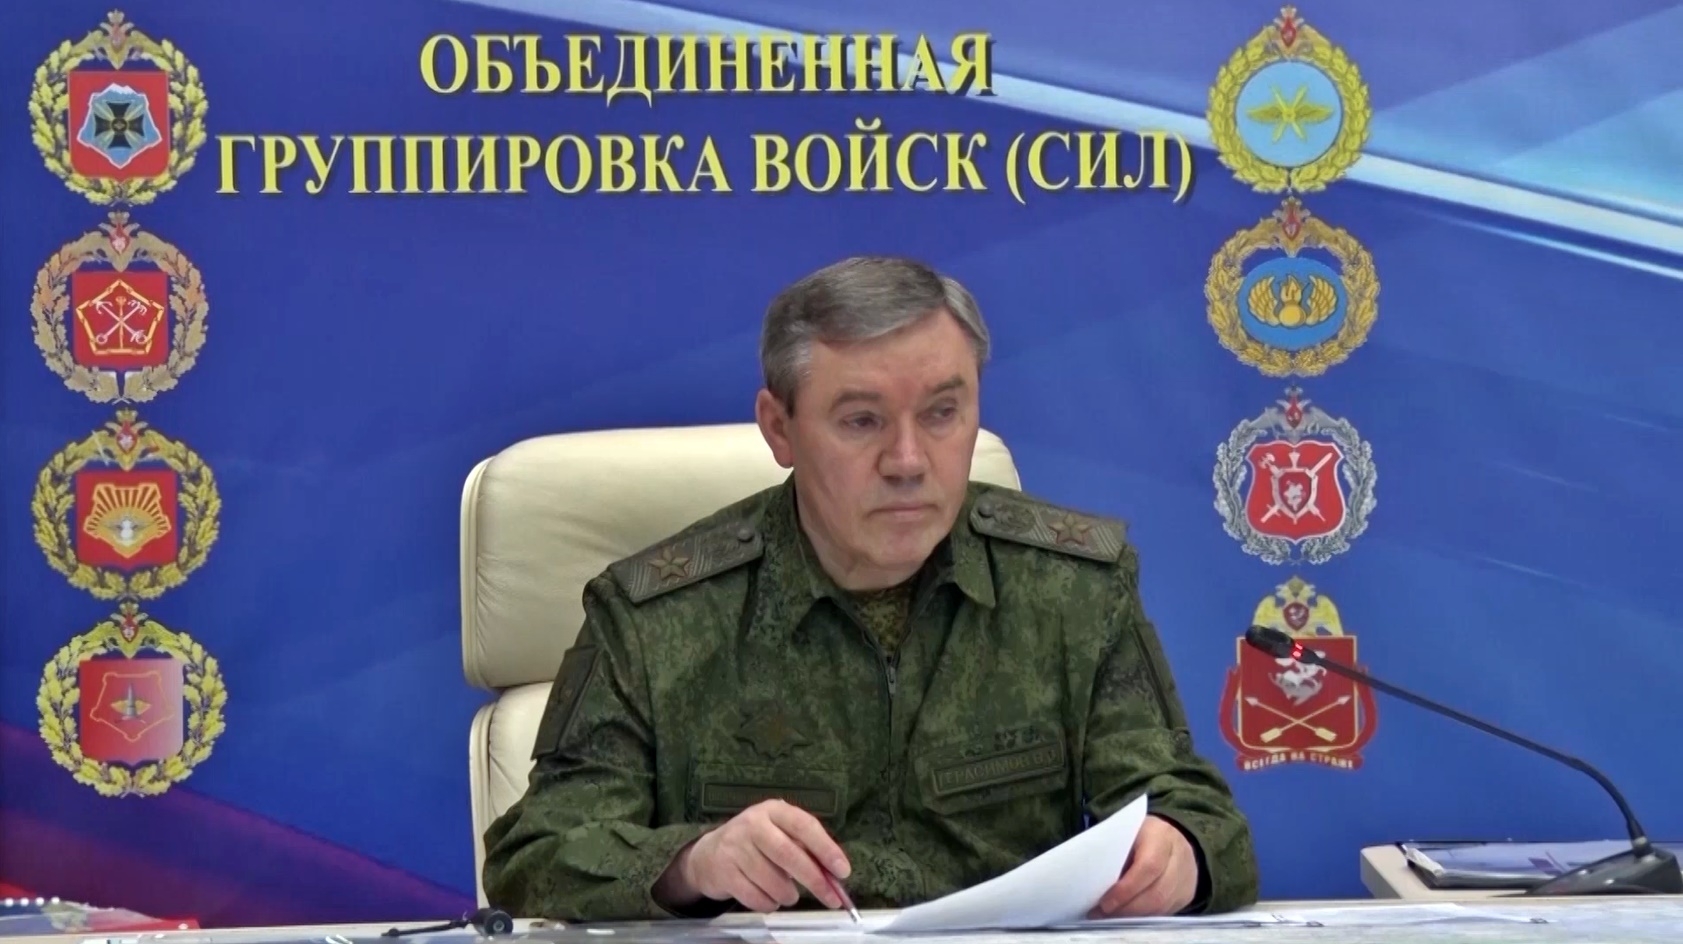 10일(현지시간)  러시아 국방부는 게라시모프 총참모장이 9일 우크라이나군이 S-200 대공미사일로 크림반도와 로스토프주, 칼루가주 지역의 목표물을 타격하려다 실패한 건과 관련해 보고를 받았다며 관련 동영상을 공개하며 일각의 경질설을 불식시켰다. 2023.7.10 러시아 국방부